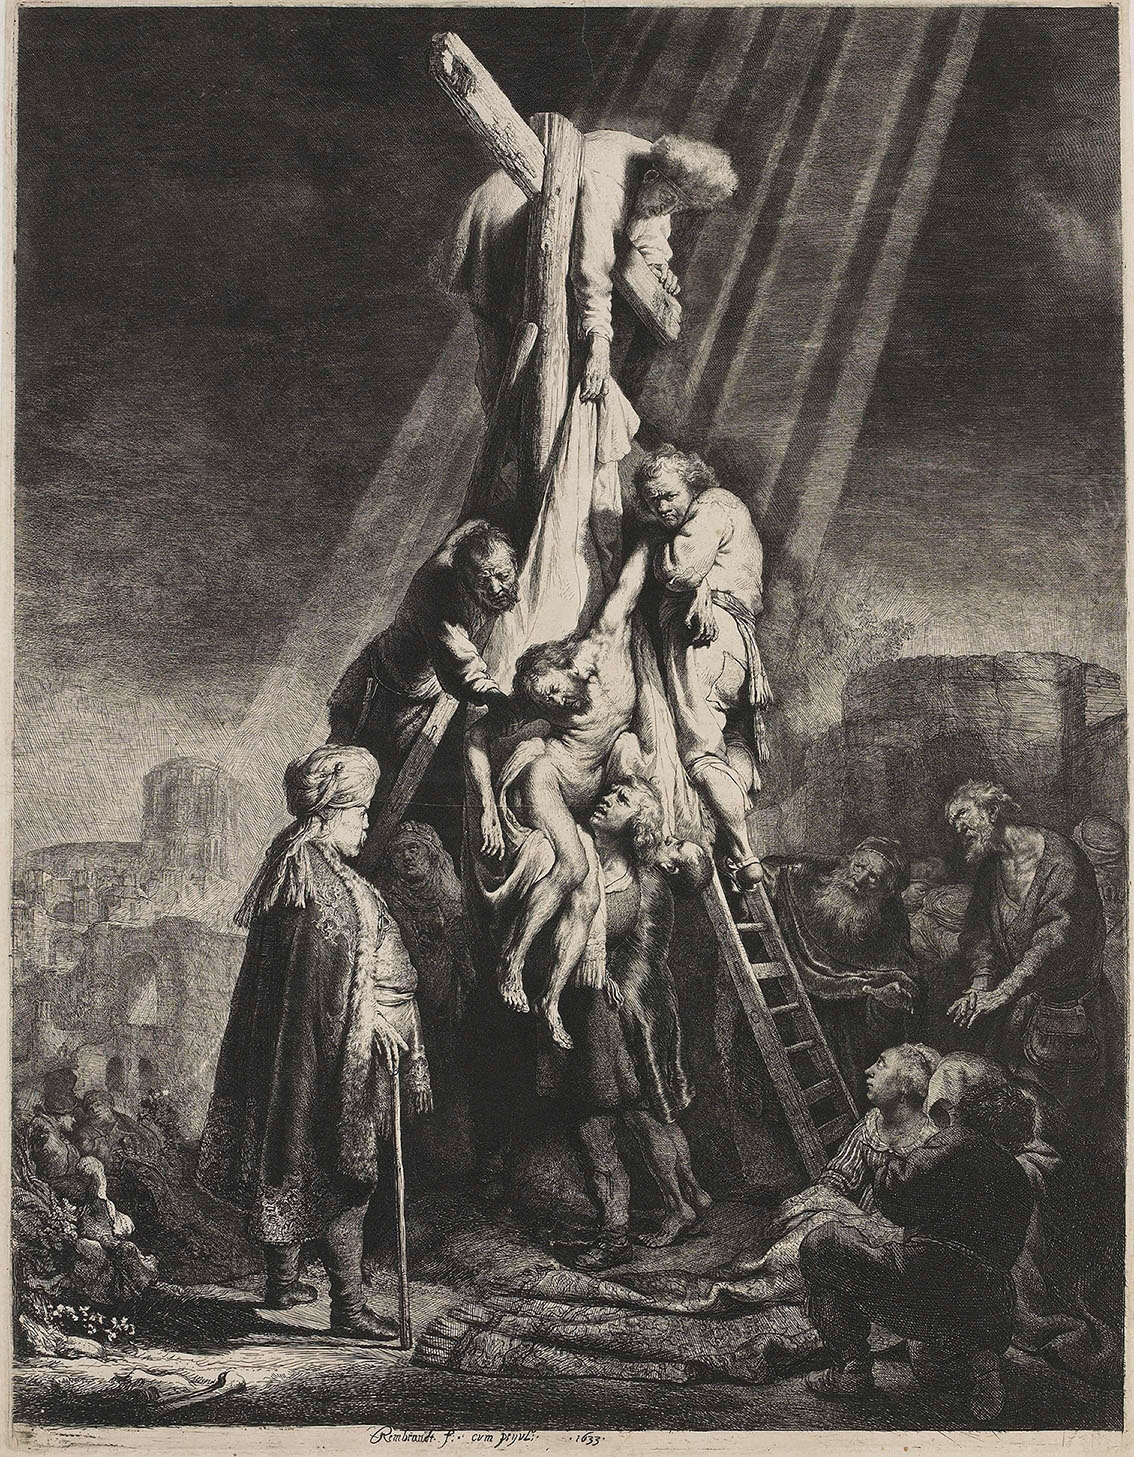 Рембрандт Харменс ван Рейн. "Снятие с креста". 1633.